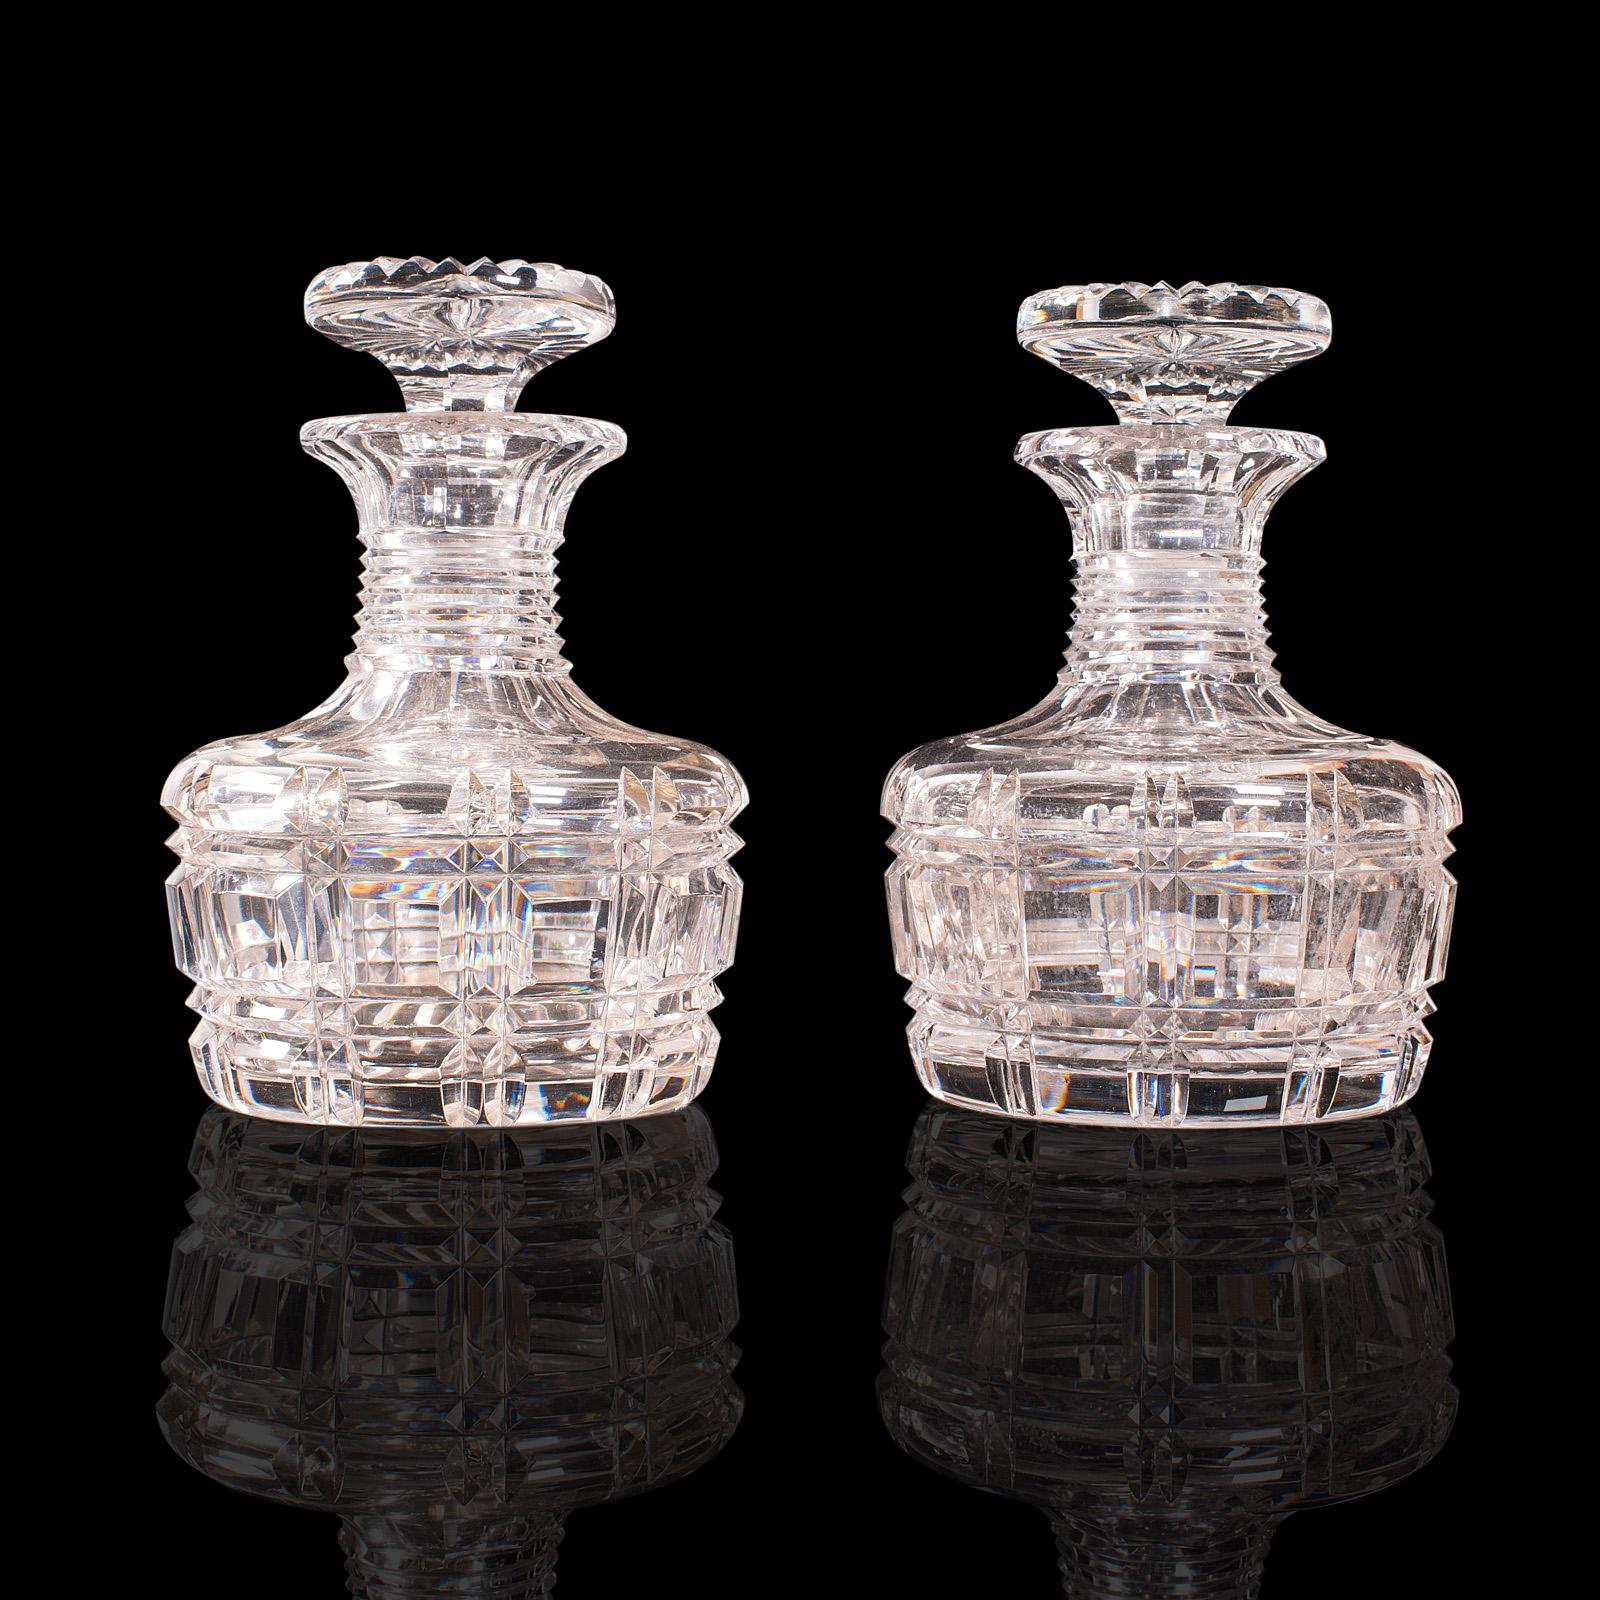 Dies ist ein Paar antiker Sherry-Karaffen. Eine englische Spirituosen- oder Likörflasche aus geschliffenem Glas aus der Edwardianischen Periode, um 1910.

Wunderschön geschliffene Karaffen mit auffälliger Oberfläche
Mit wünschenswerter